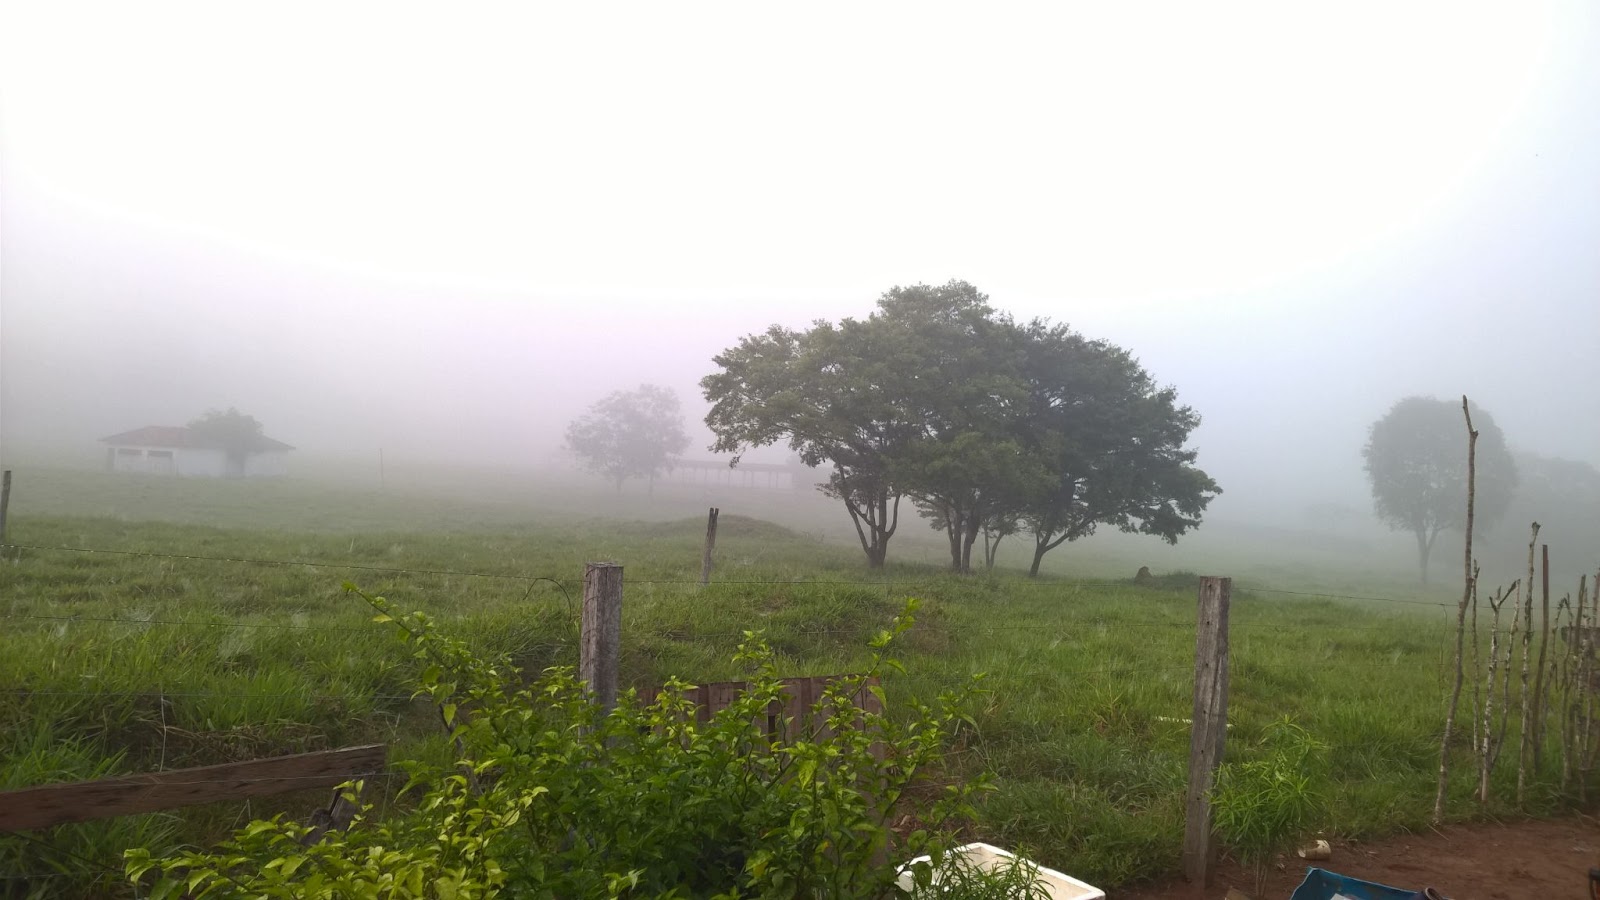 Neblina matinal tomando conta de gramado com algumas árvores em Cacoal RO.